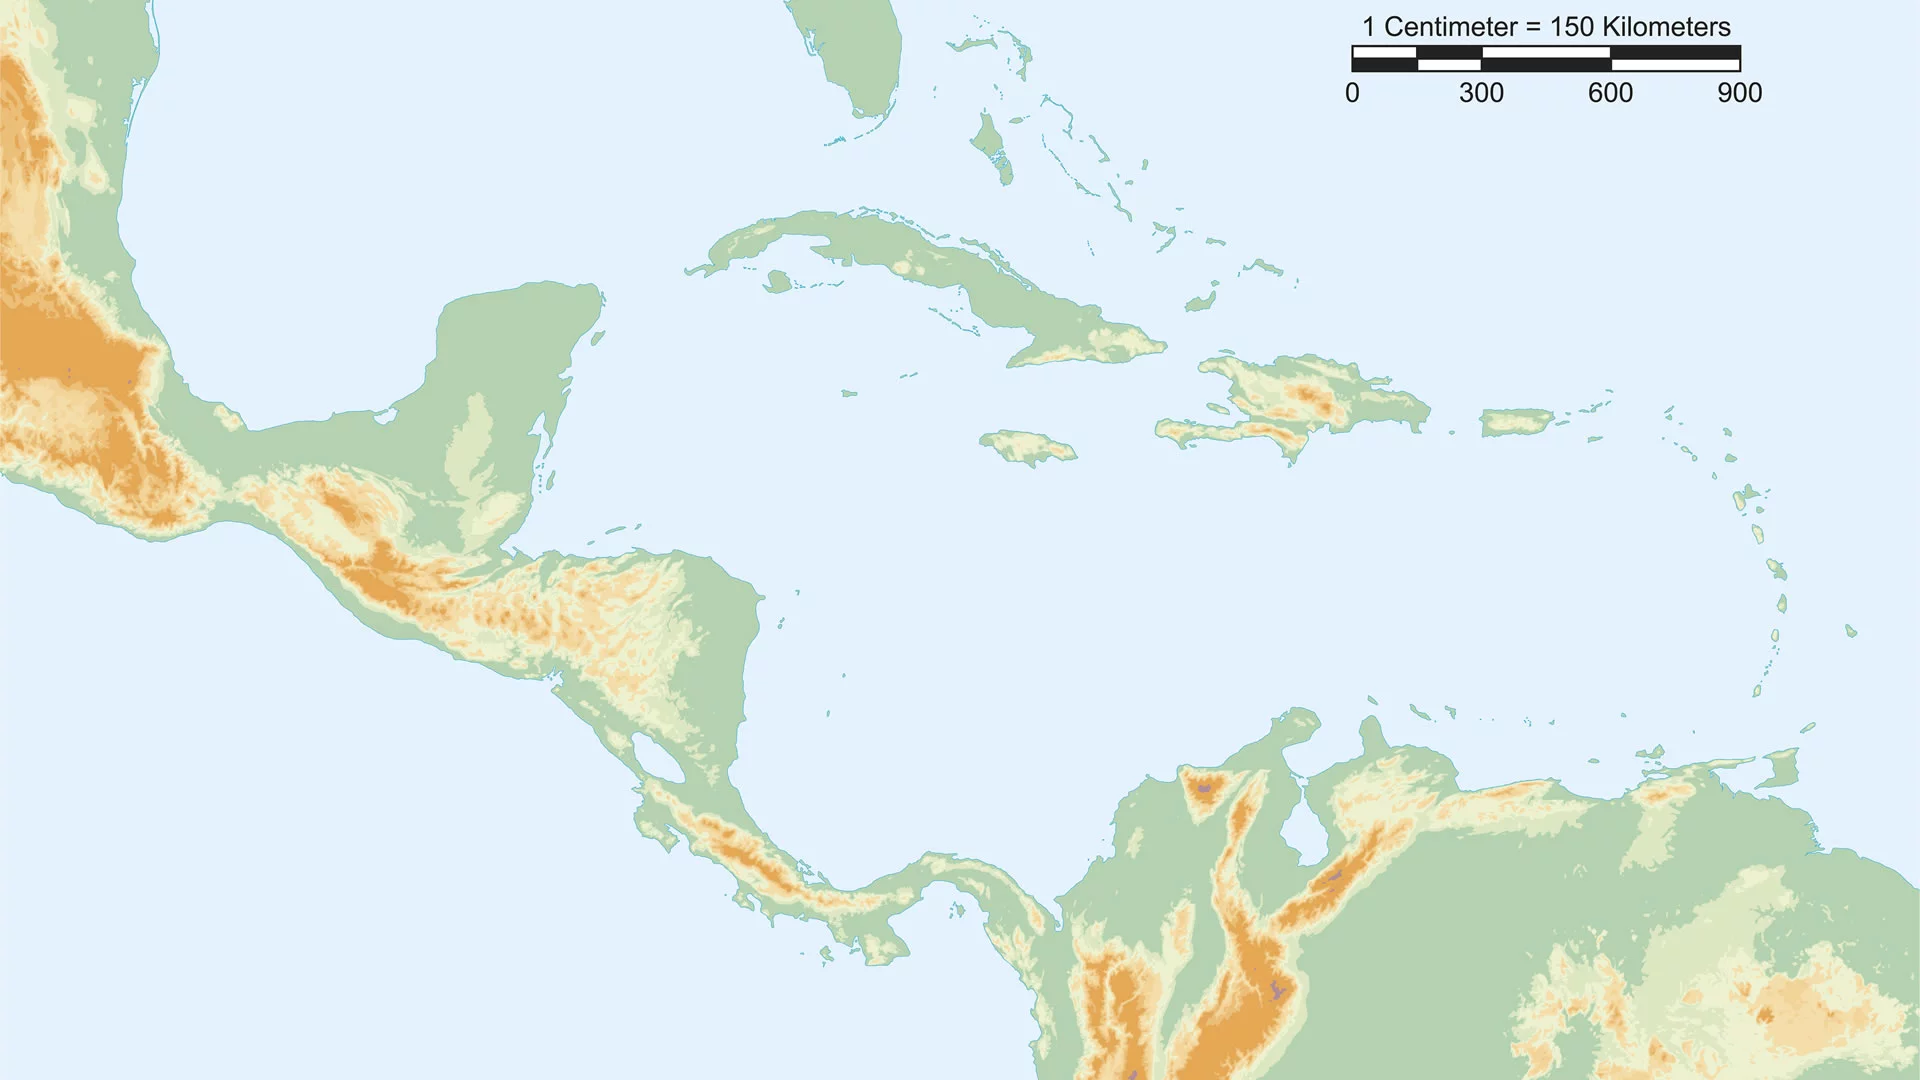 Mapa físico de Centroamérica con escala